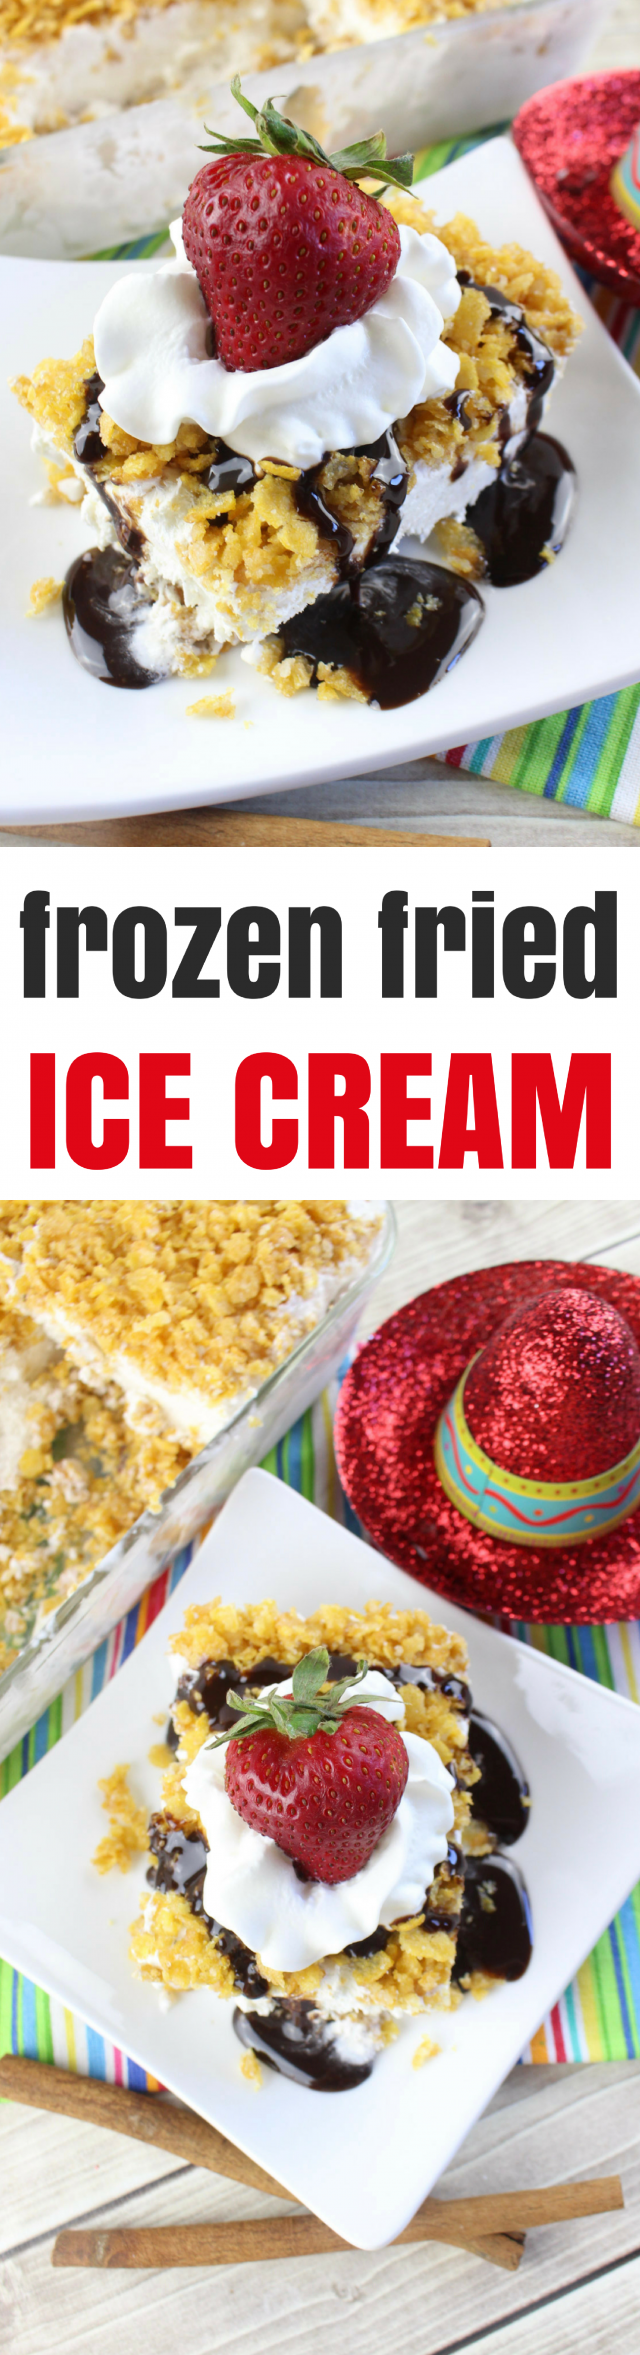 Frozen Fried Ice Cream Cornflake Dessert Recipe